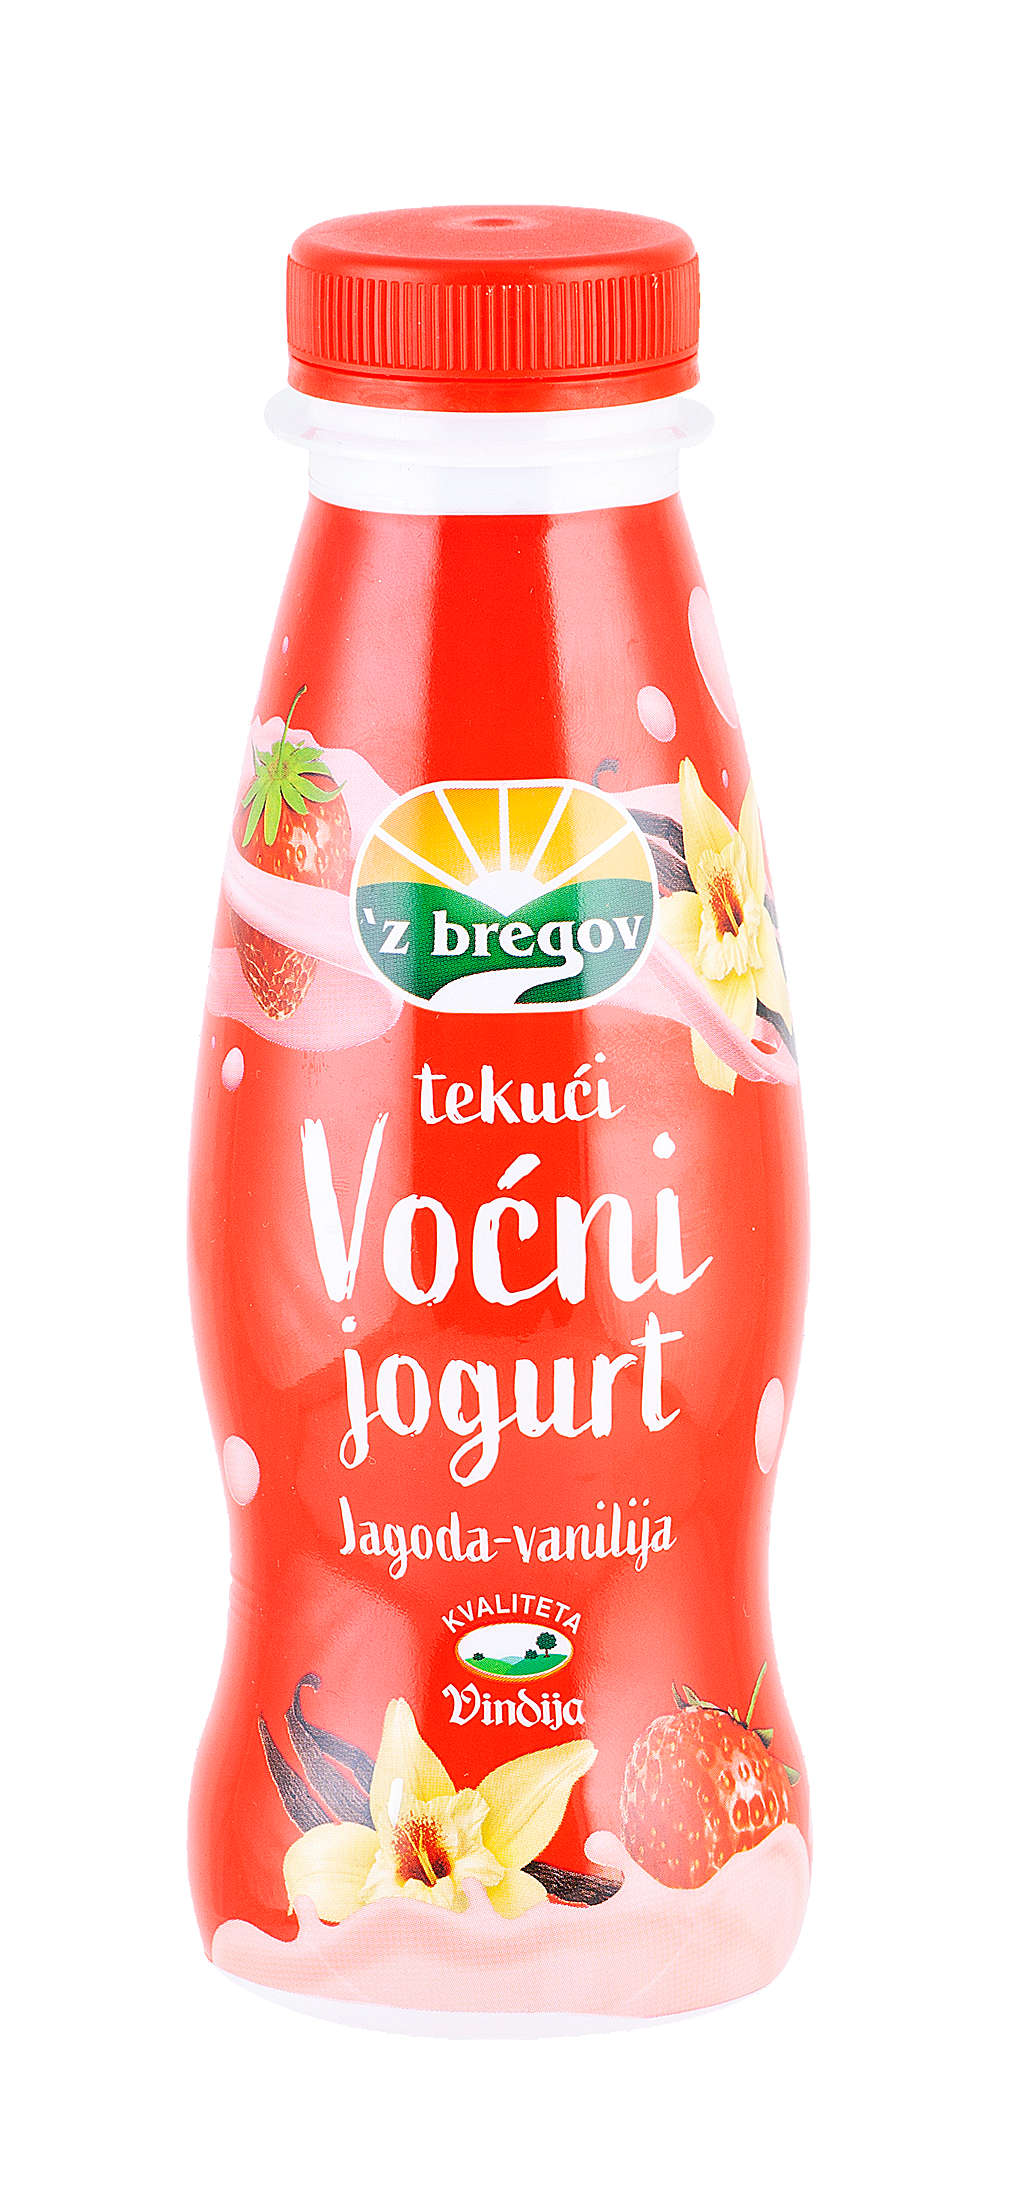 Fotografija ponude Zbregov Voćni jogurt